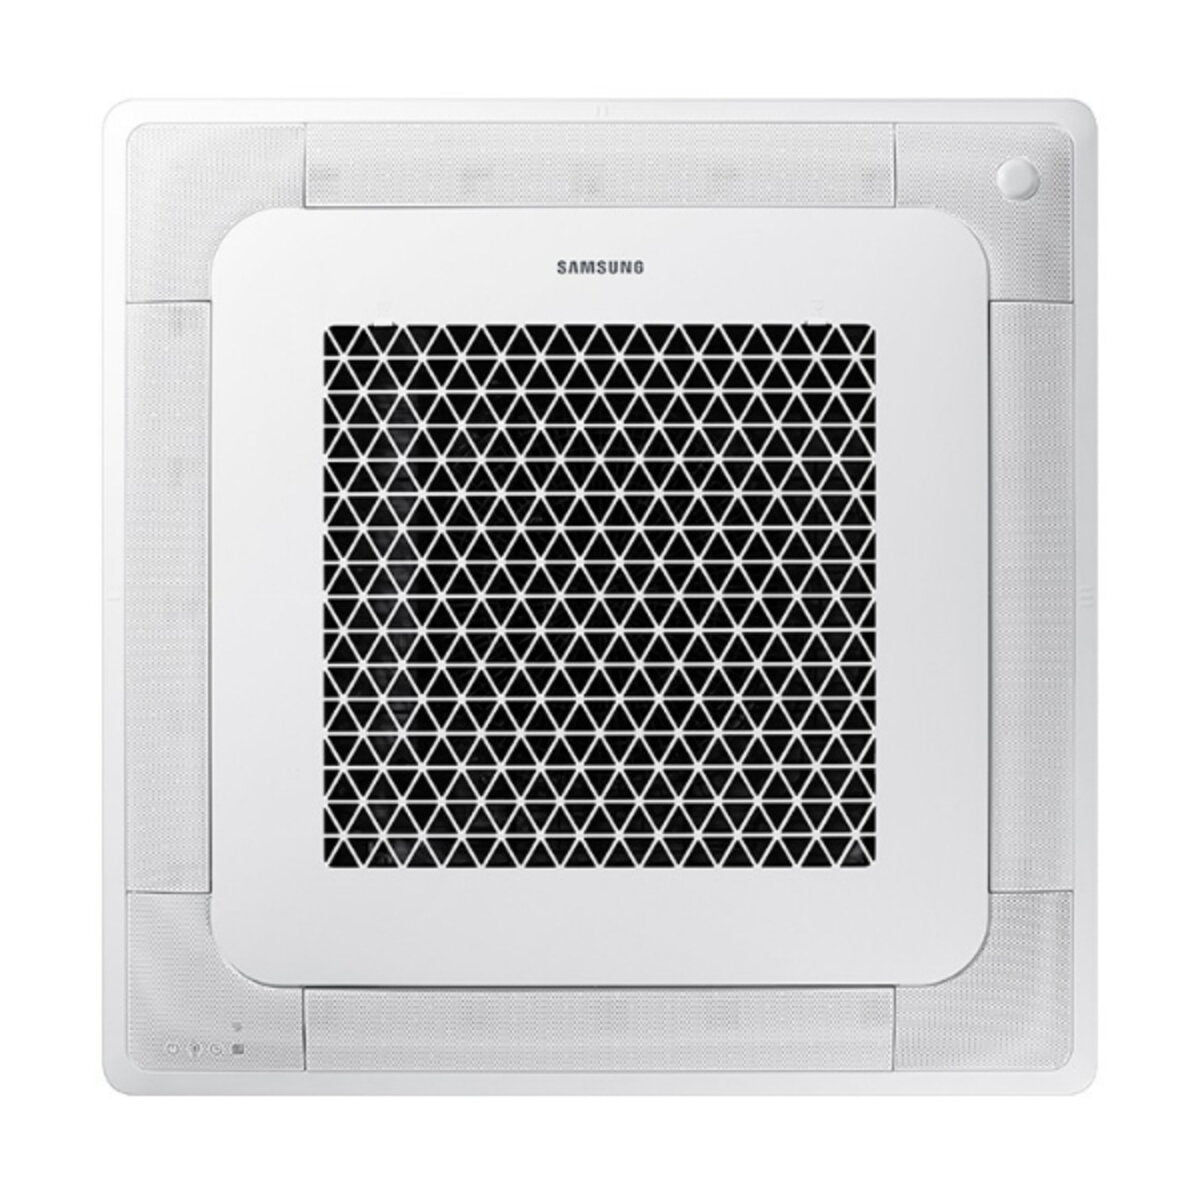 Samsung Klimaanlage Windfree 4-Wege Square Split 12000 + 12000 + 12000 + 12000 BTU Inverter A++ Außengerät 10,0 kW